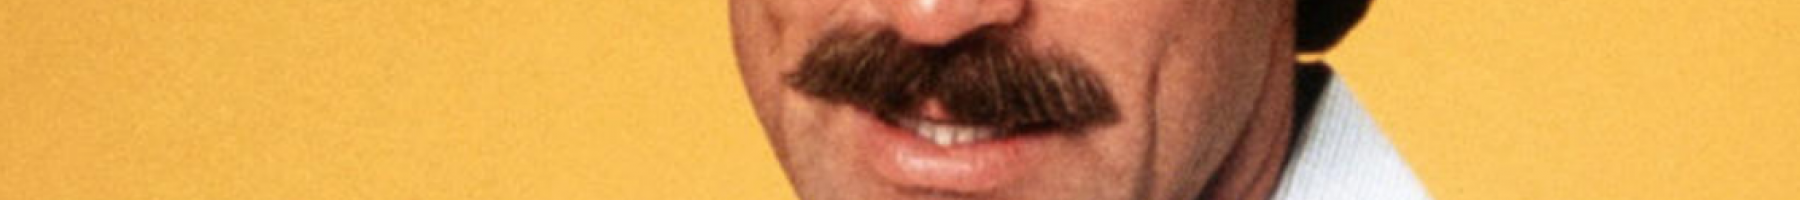 Photo of a man's moustache